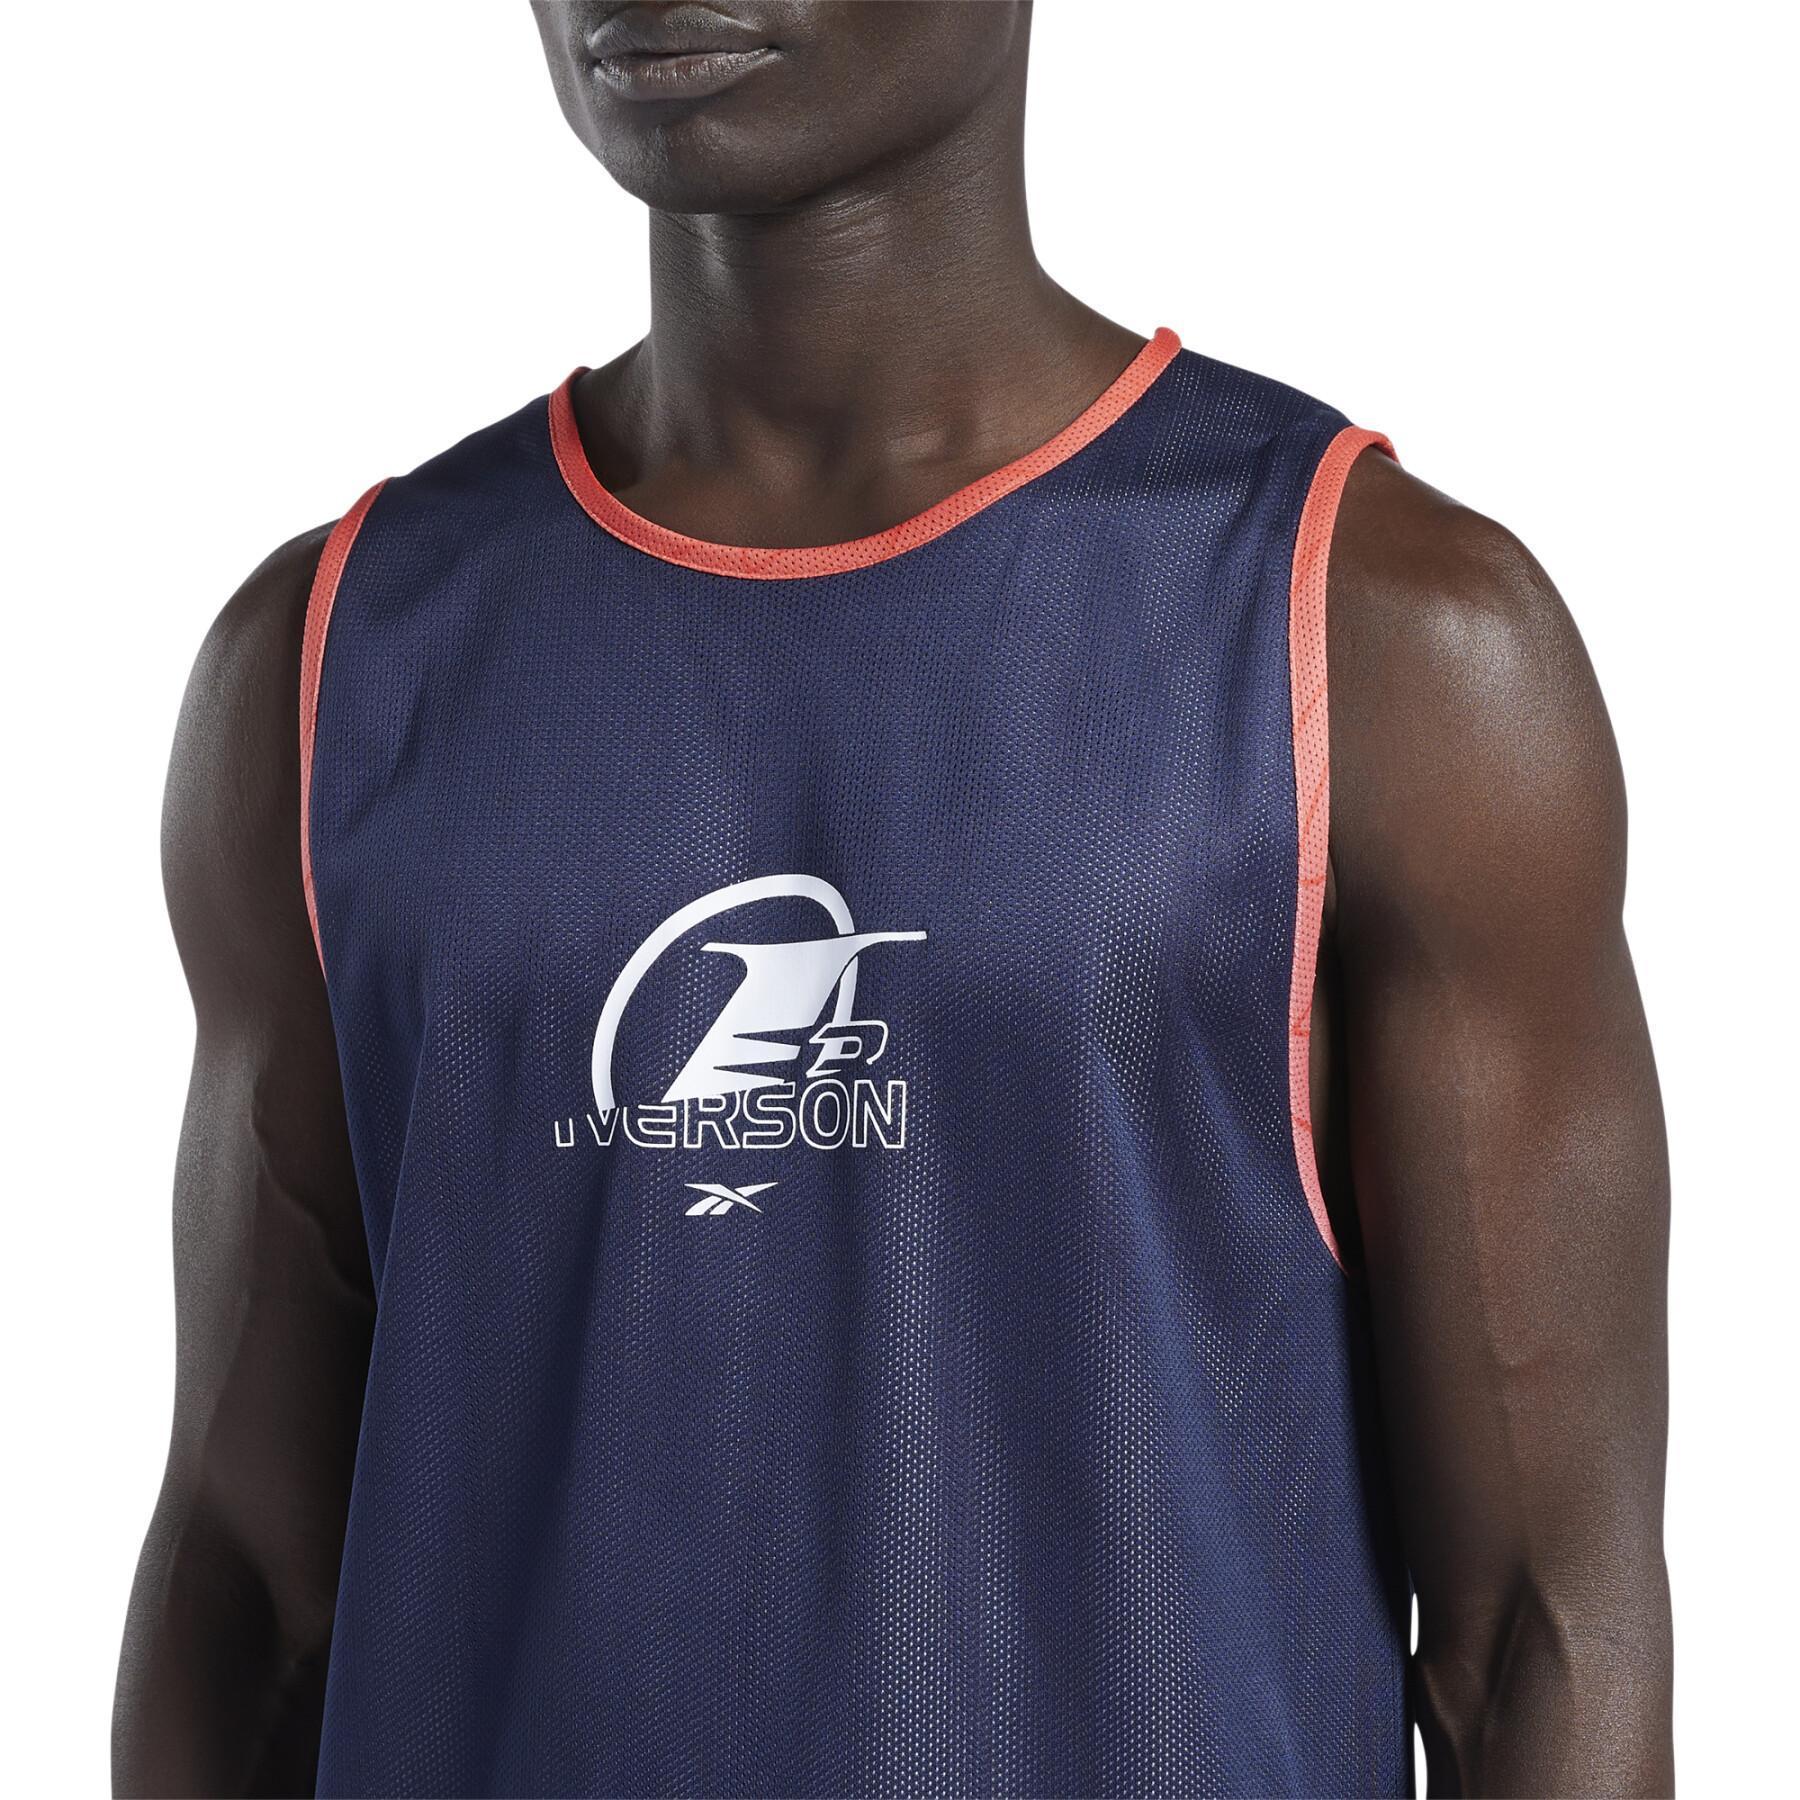 Camiseta de tirantes Reebok Iverson Basketball